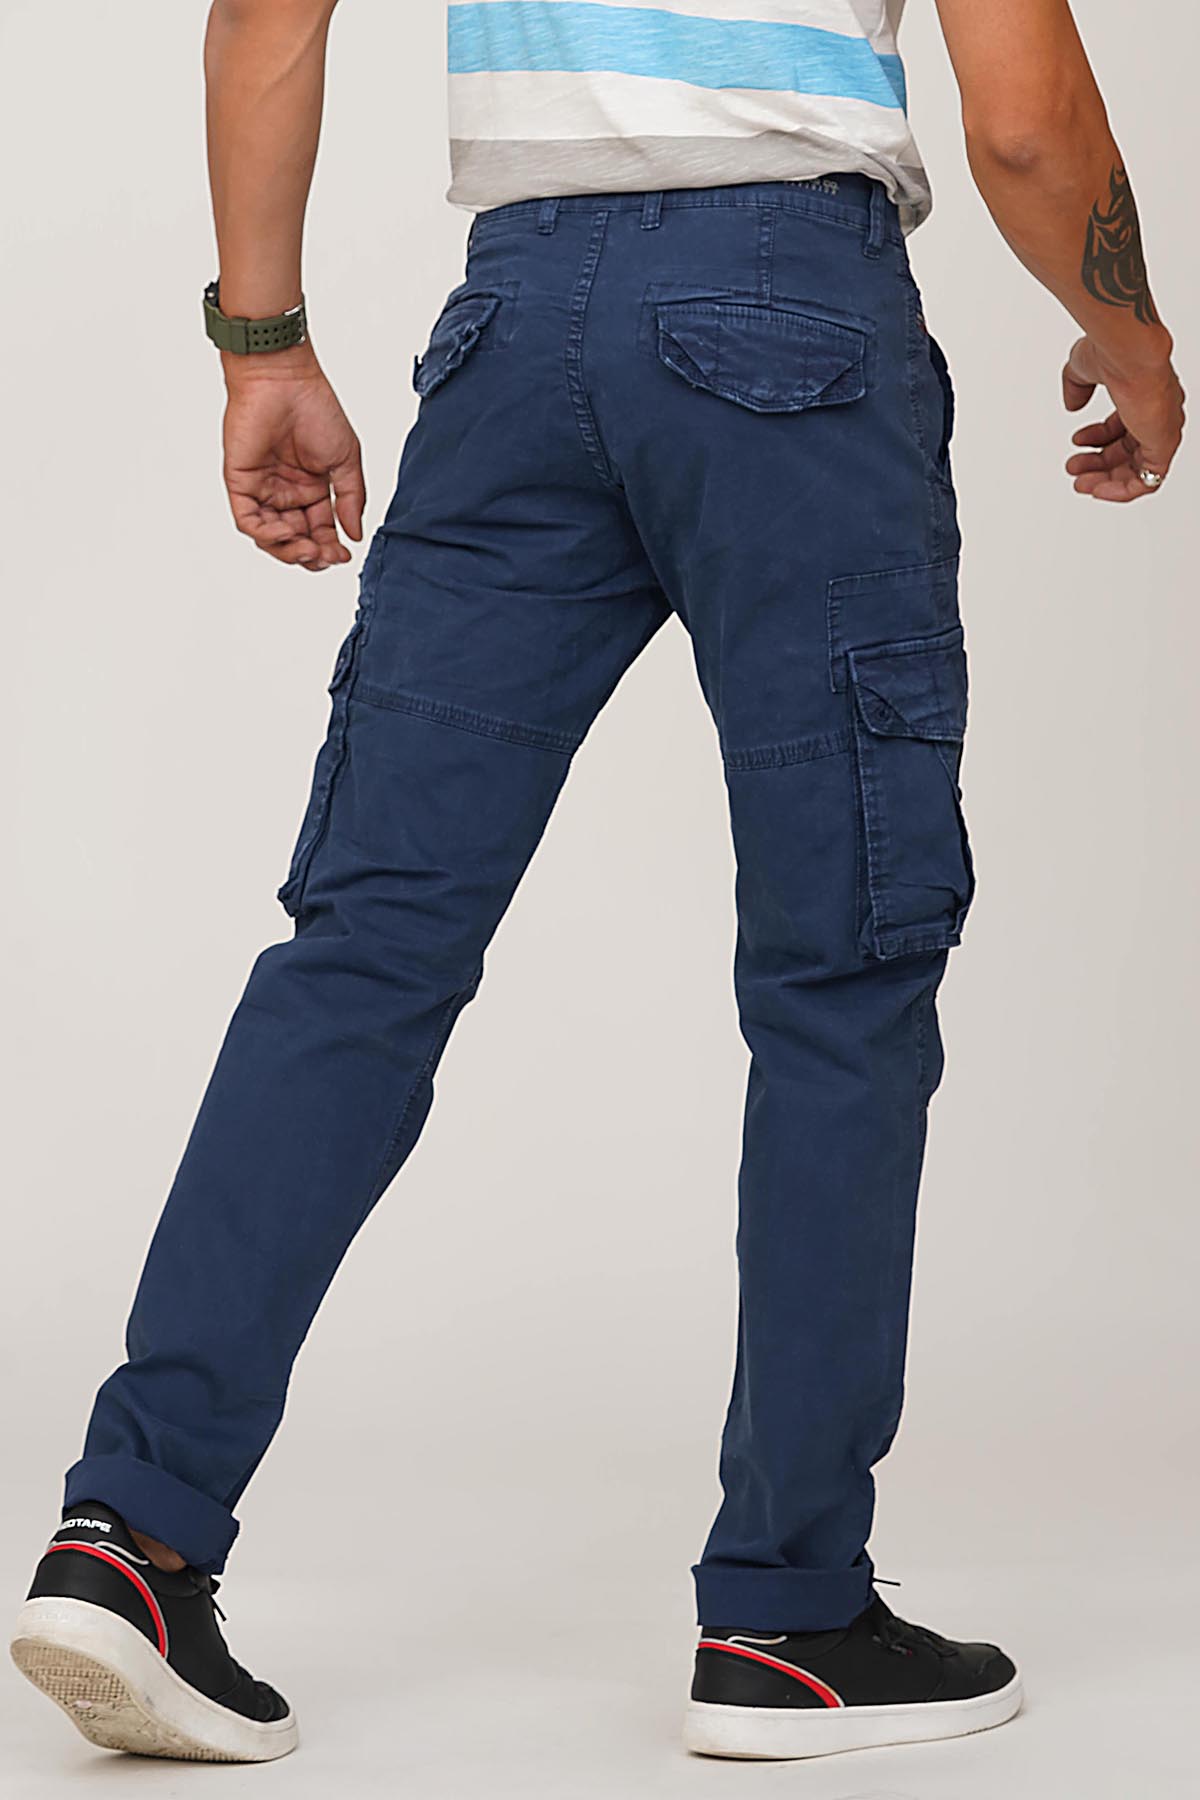 Buy Navy Blue Ripstop Adventure Cargo Pants For Men Online In India